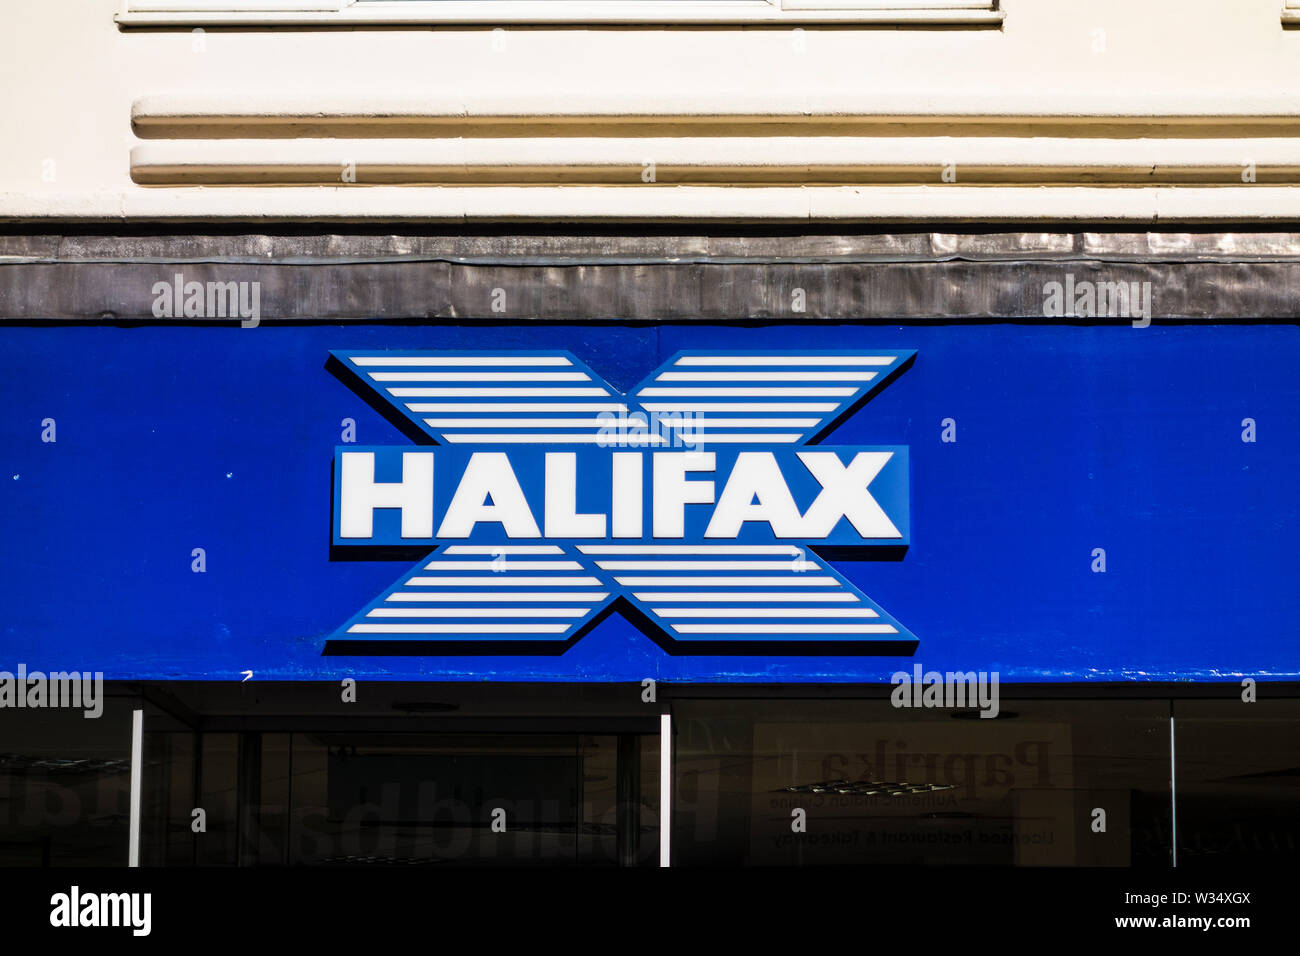 Halifax sign, Stourbridge, West Midlands, UK Stock Photo